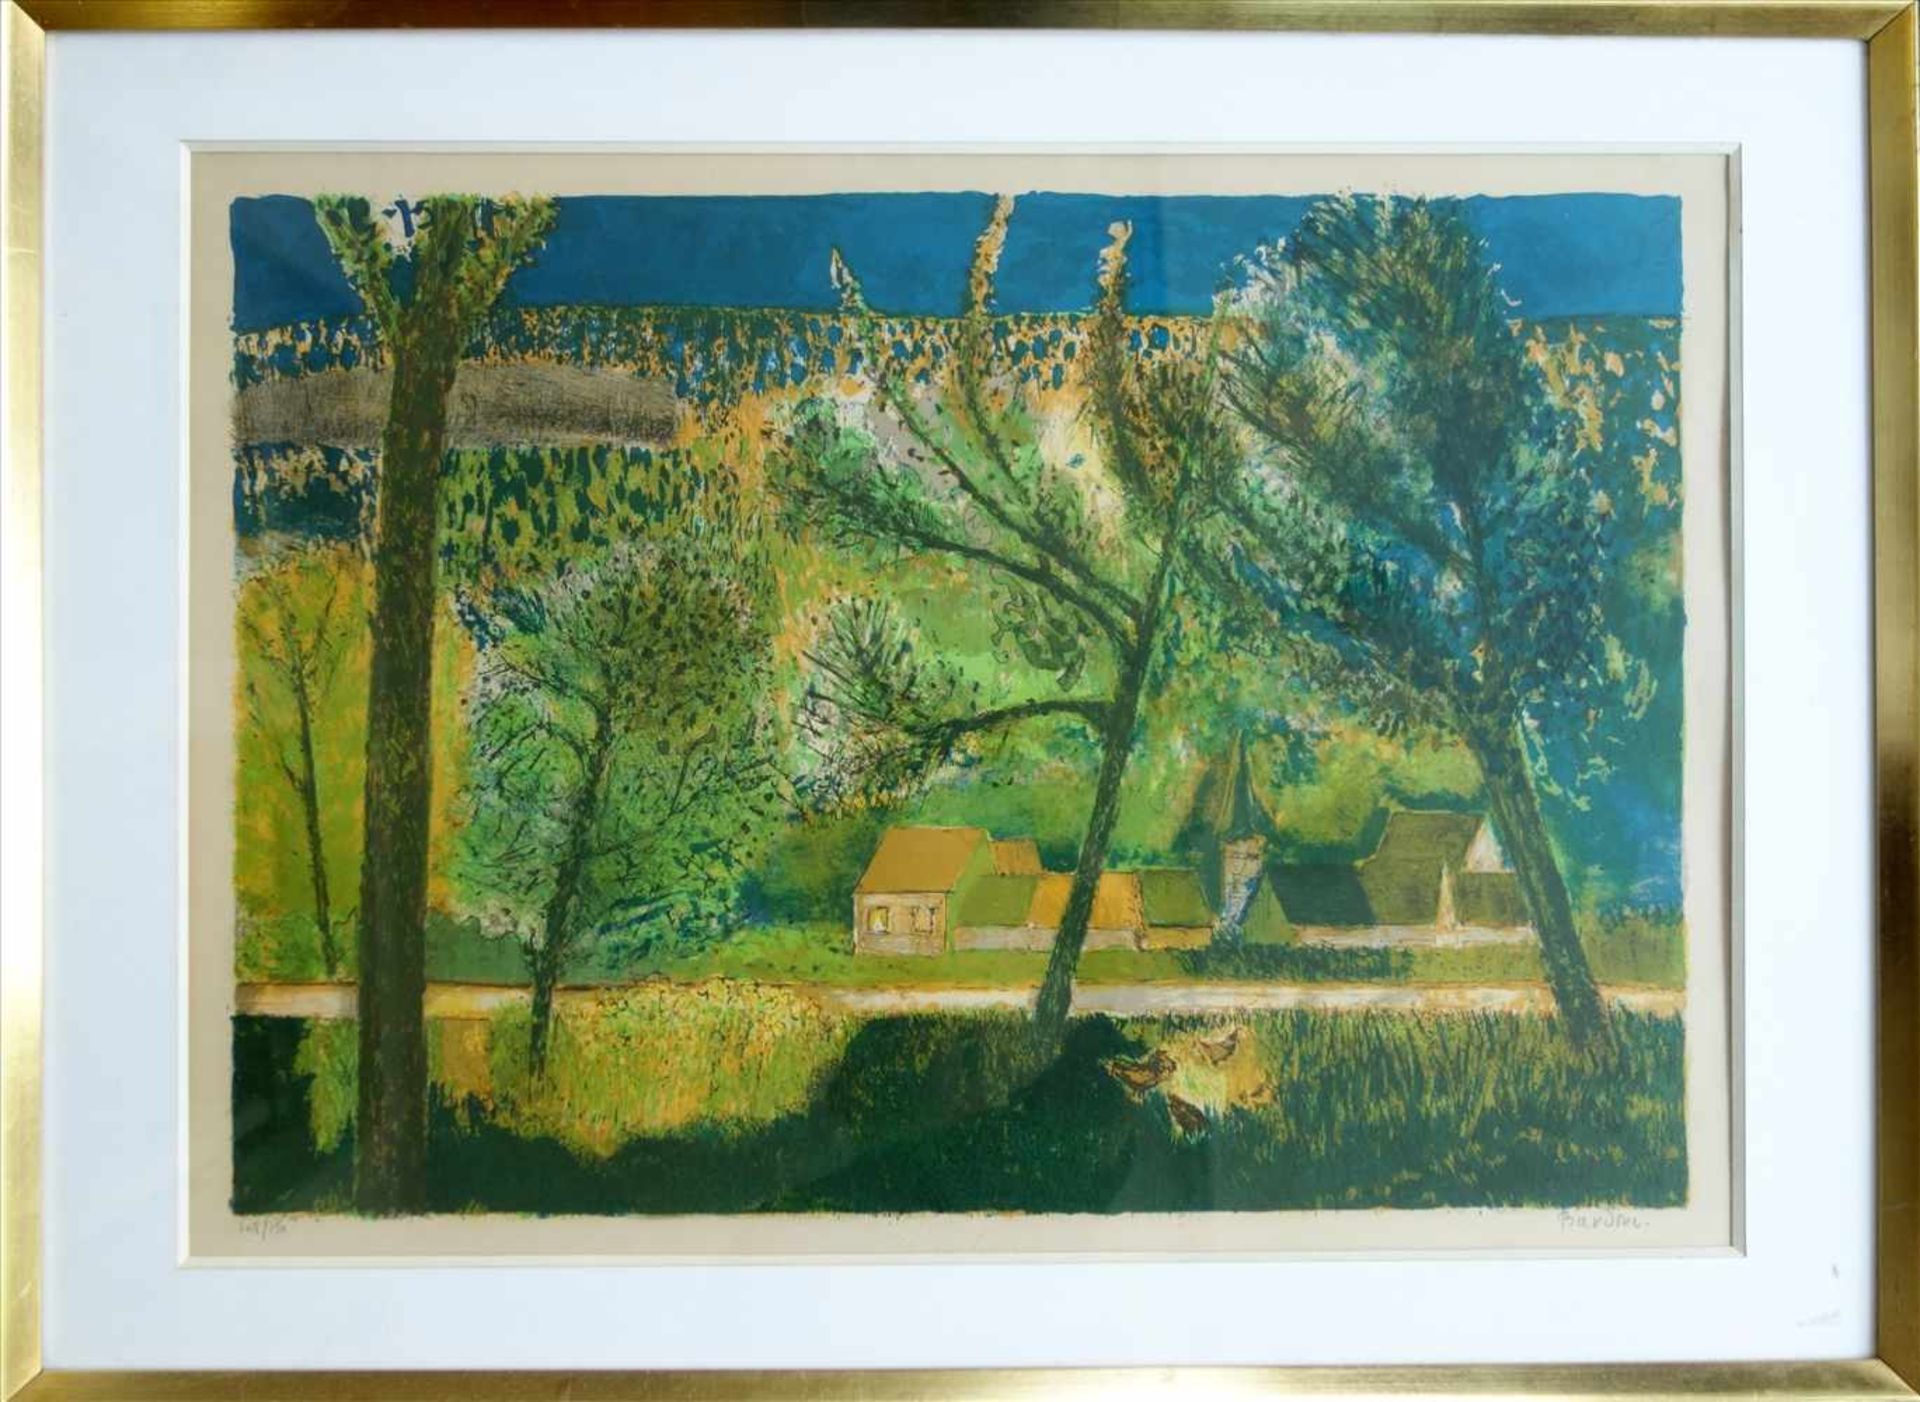 Guy Bardone (1927-2015), Dorf in sommerlicher Landschaft, Farblithographie, Ex. 148/150, unten